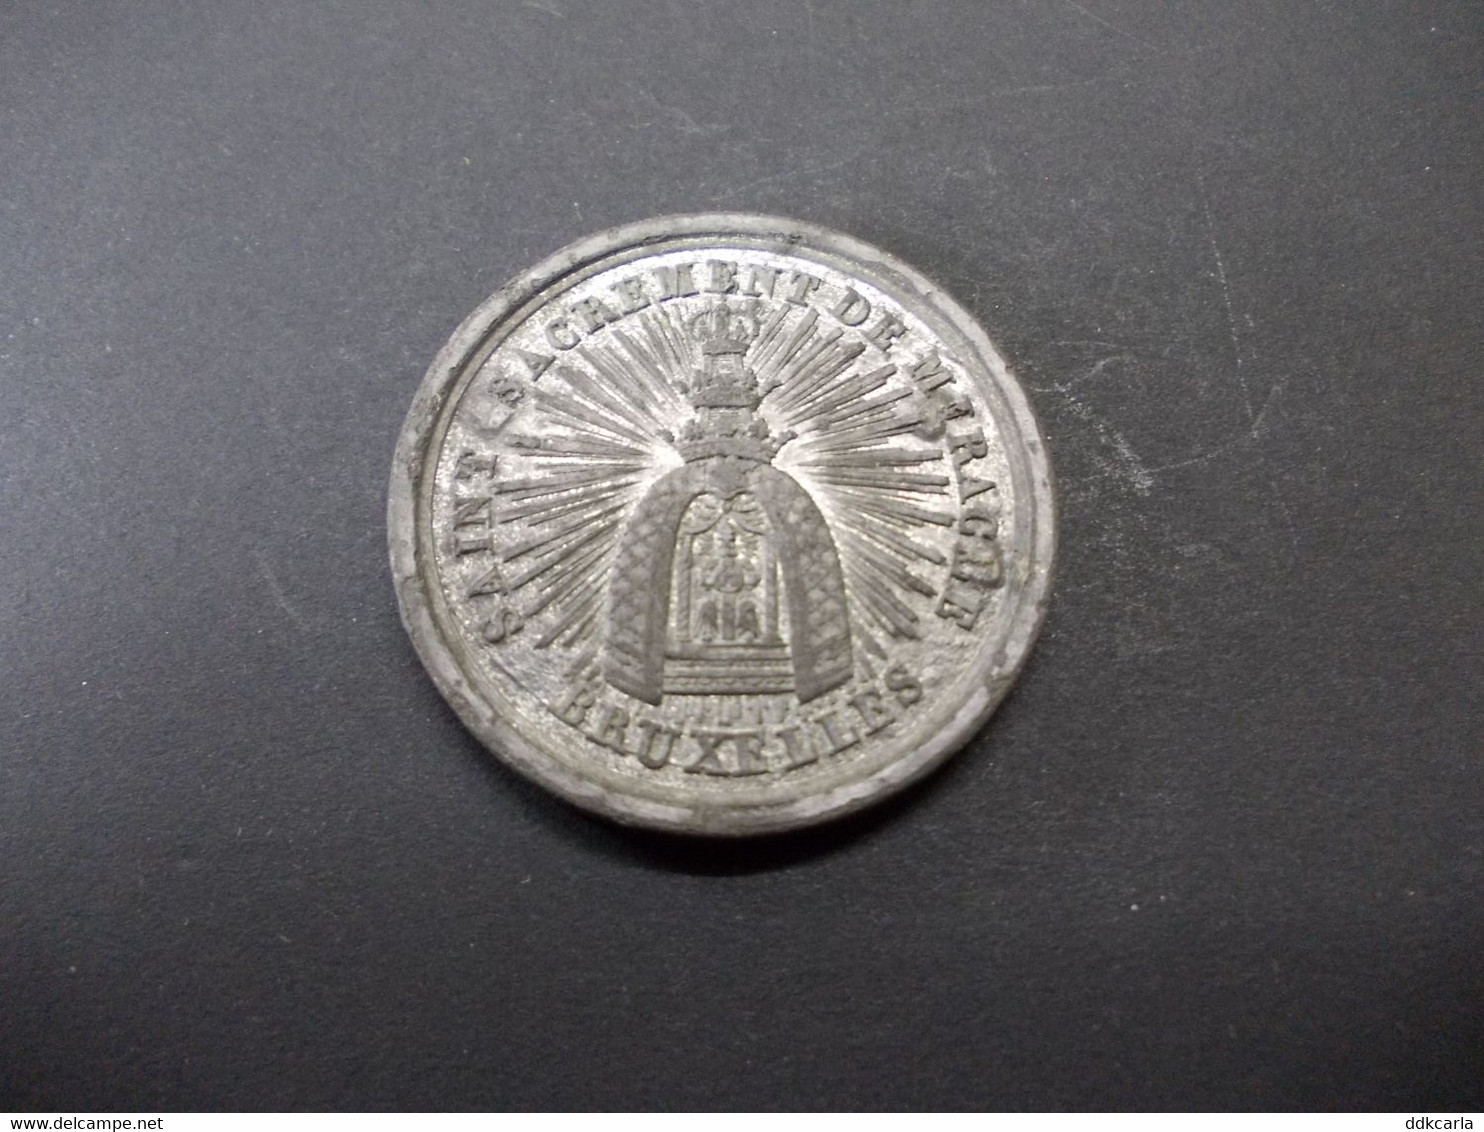 Penning - Jubile Et Fete Communale De Bruxelles An 1820 - Monedas Elongadas (elongated Coins)